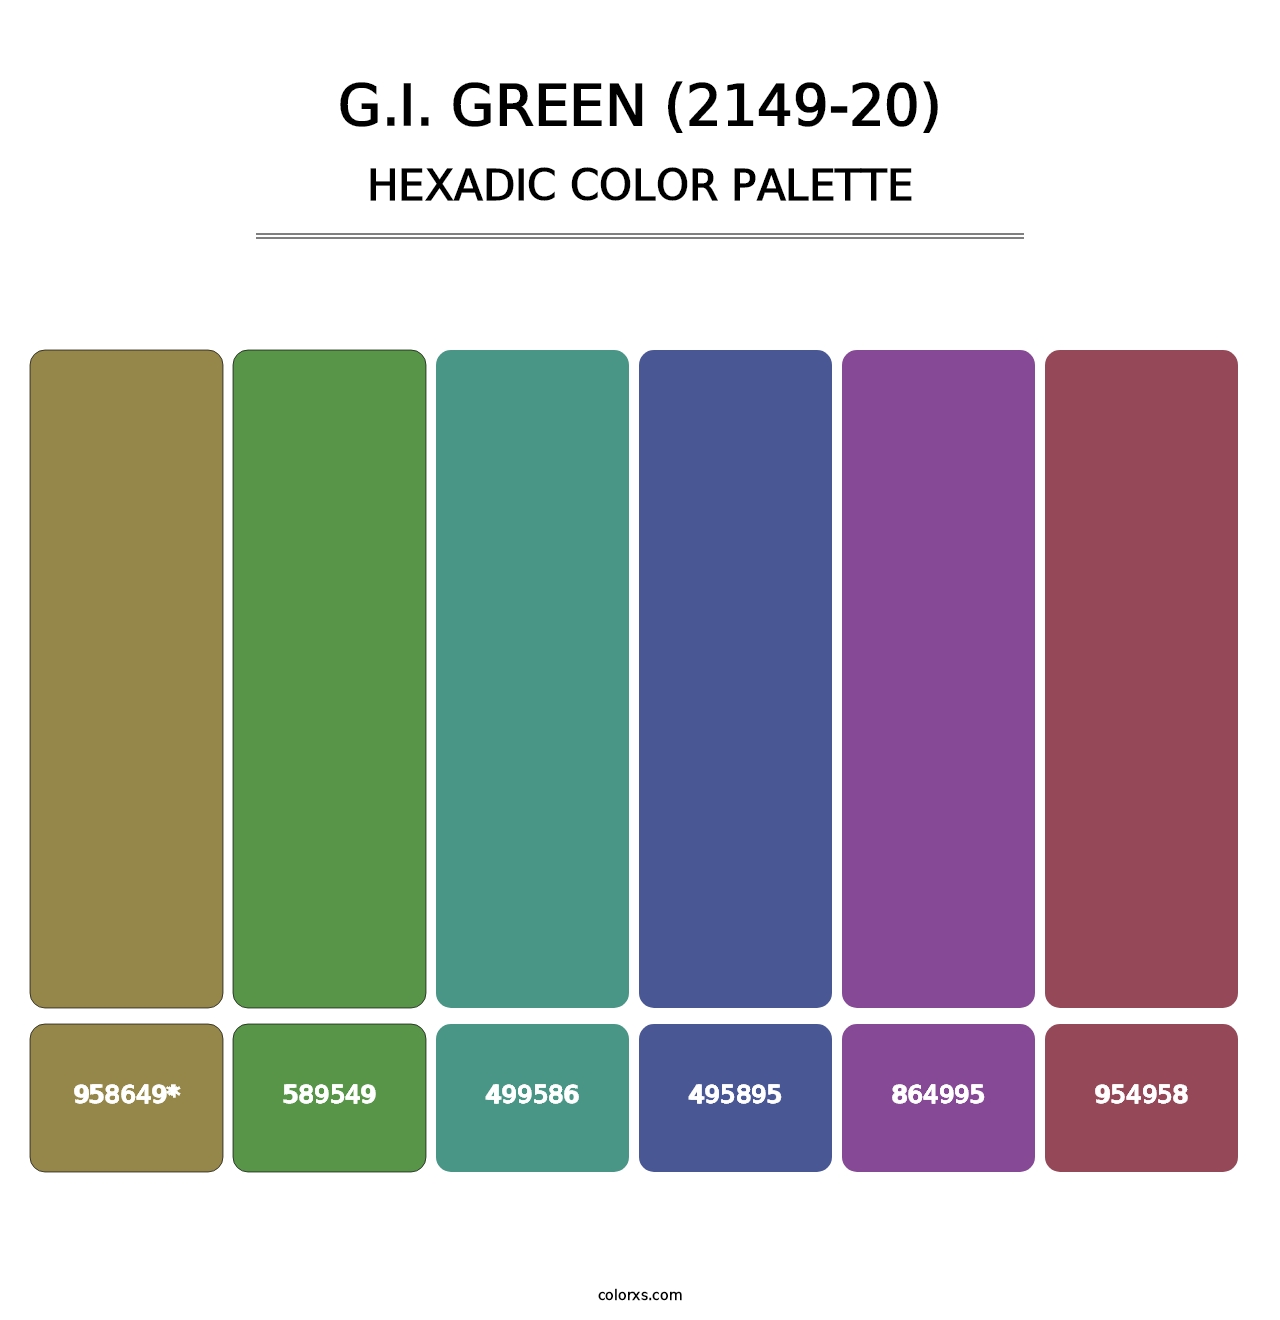 G.I. Green (2149-20) - Hexadic Color Palette